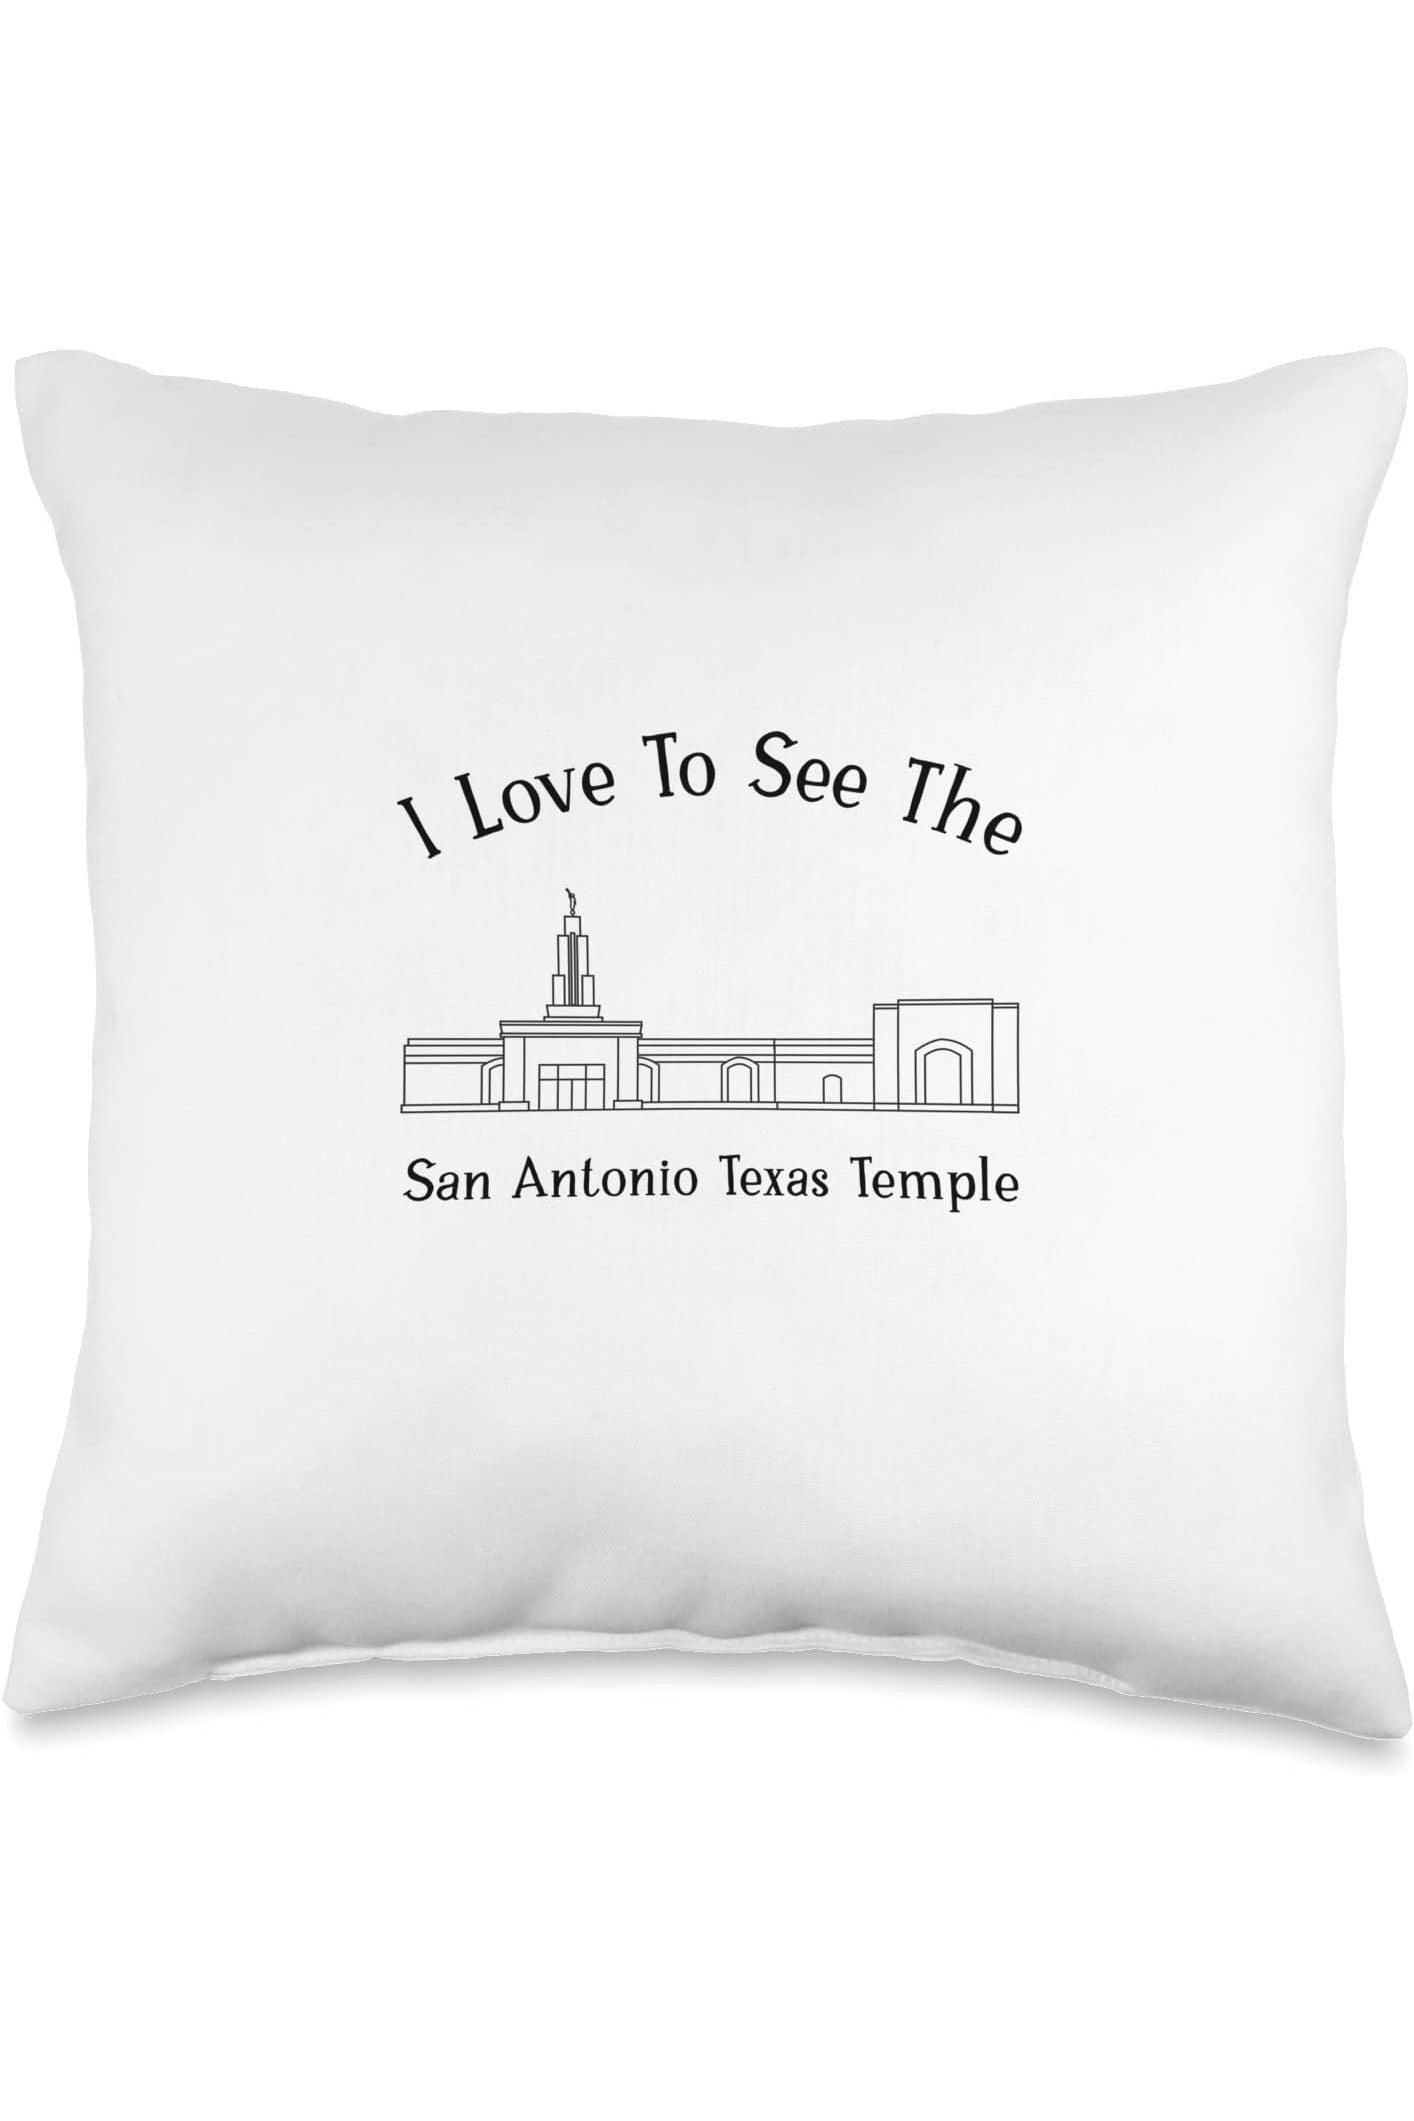 San Antonio Texas Temple Throw Pillows - Happy Style (English) US